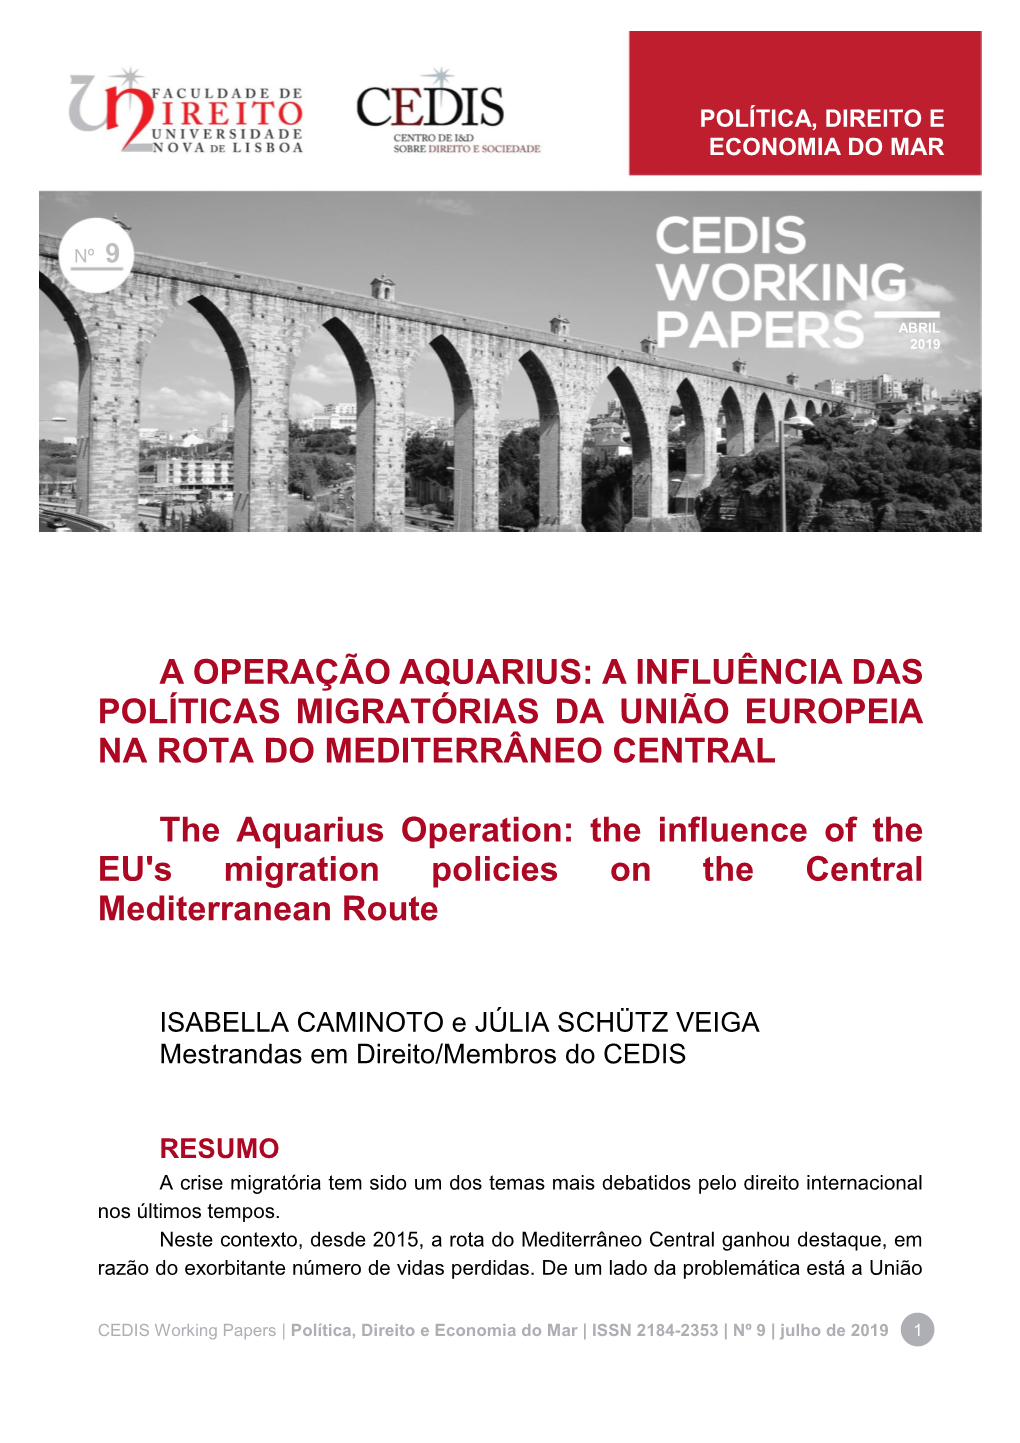 A Operação Aquarius: a Influência Das Políticas Migratórias Da União Europeia Na Rota Do Mediterrâneo Central